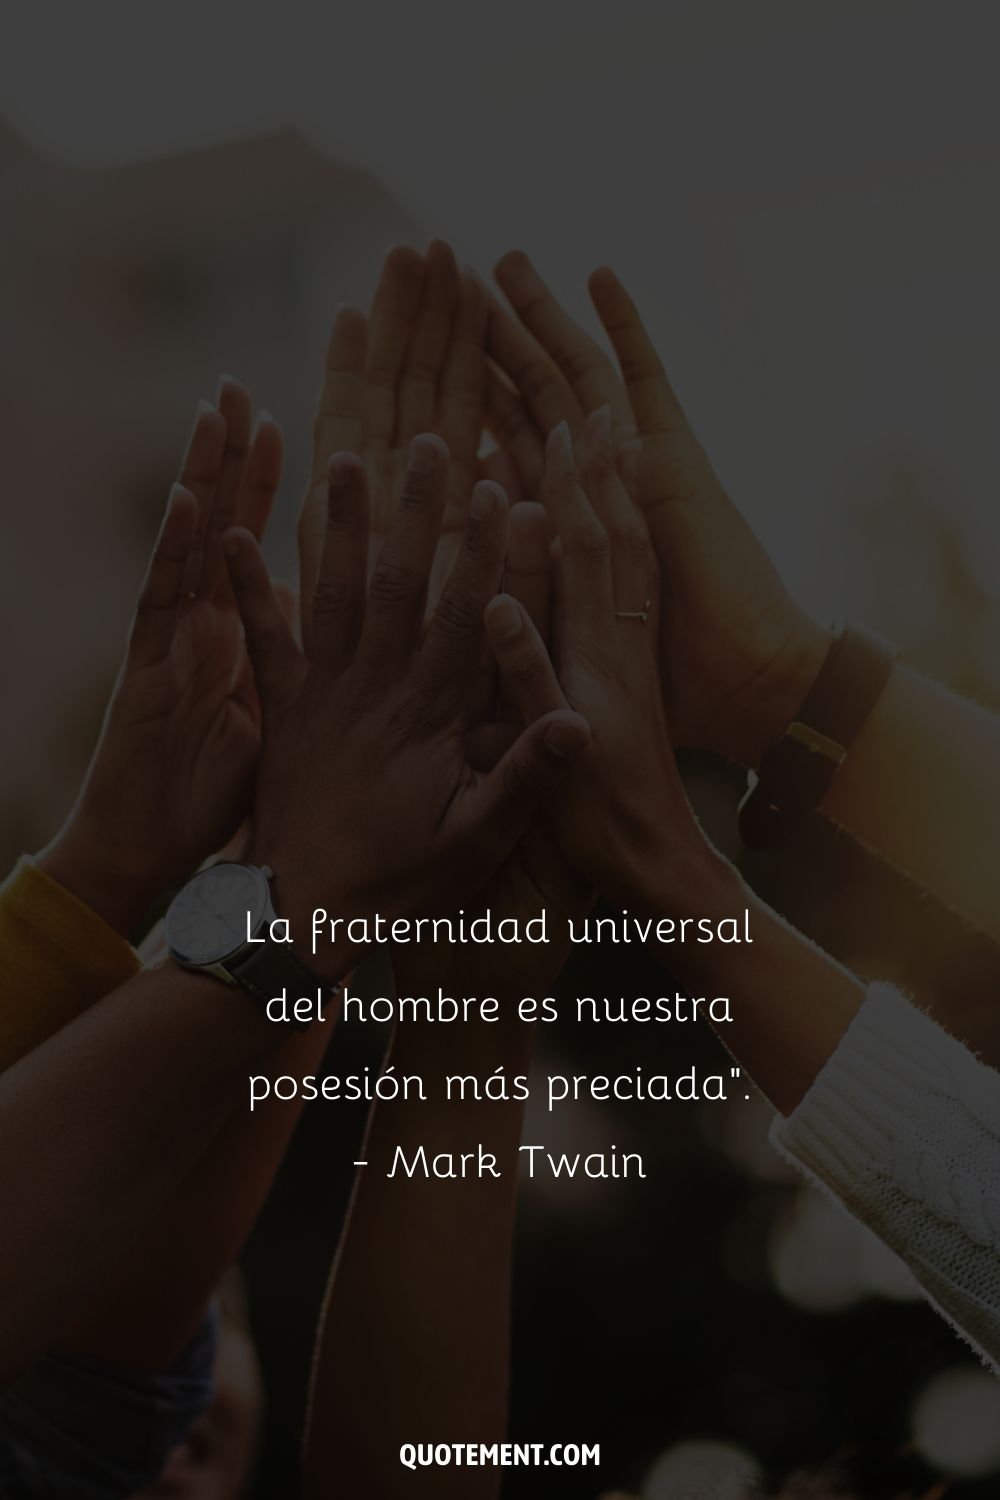 "La fraternidad universal del hombre es nuestra posesión más preciada". - Mark Twain